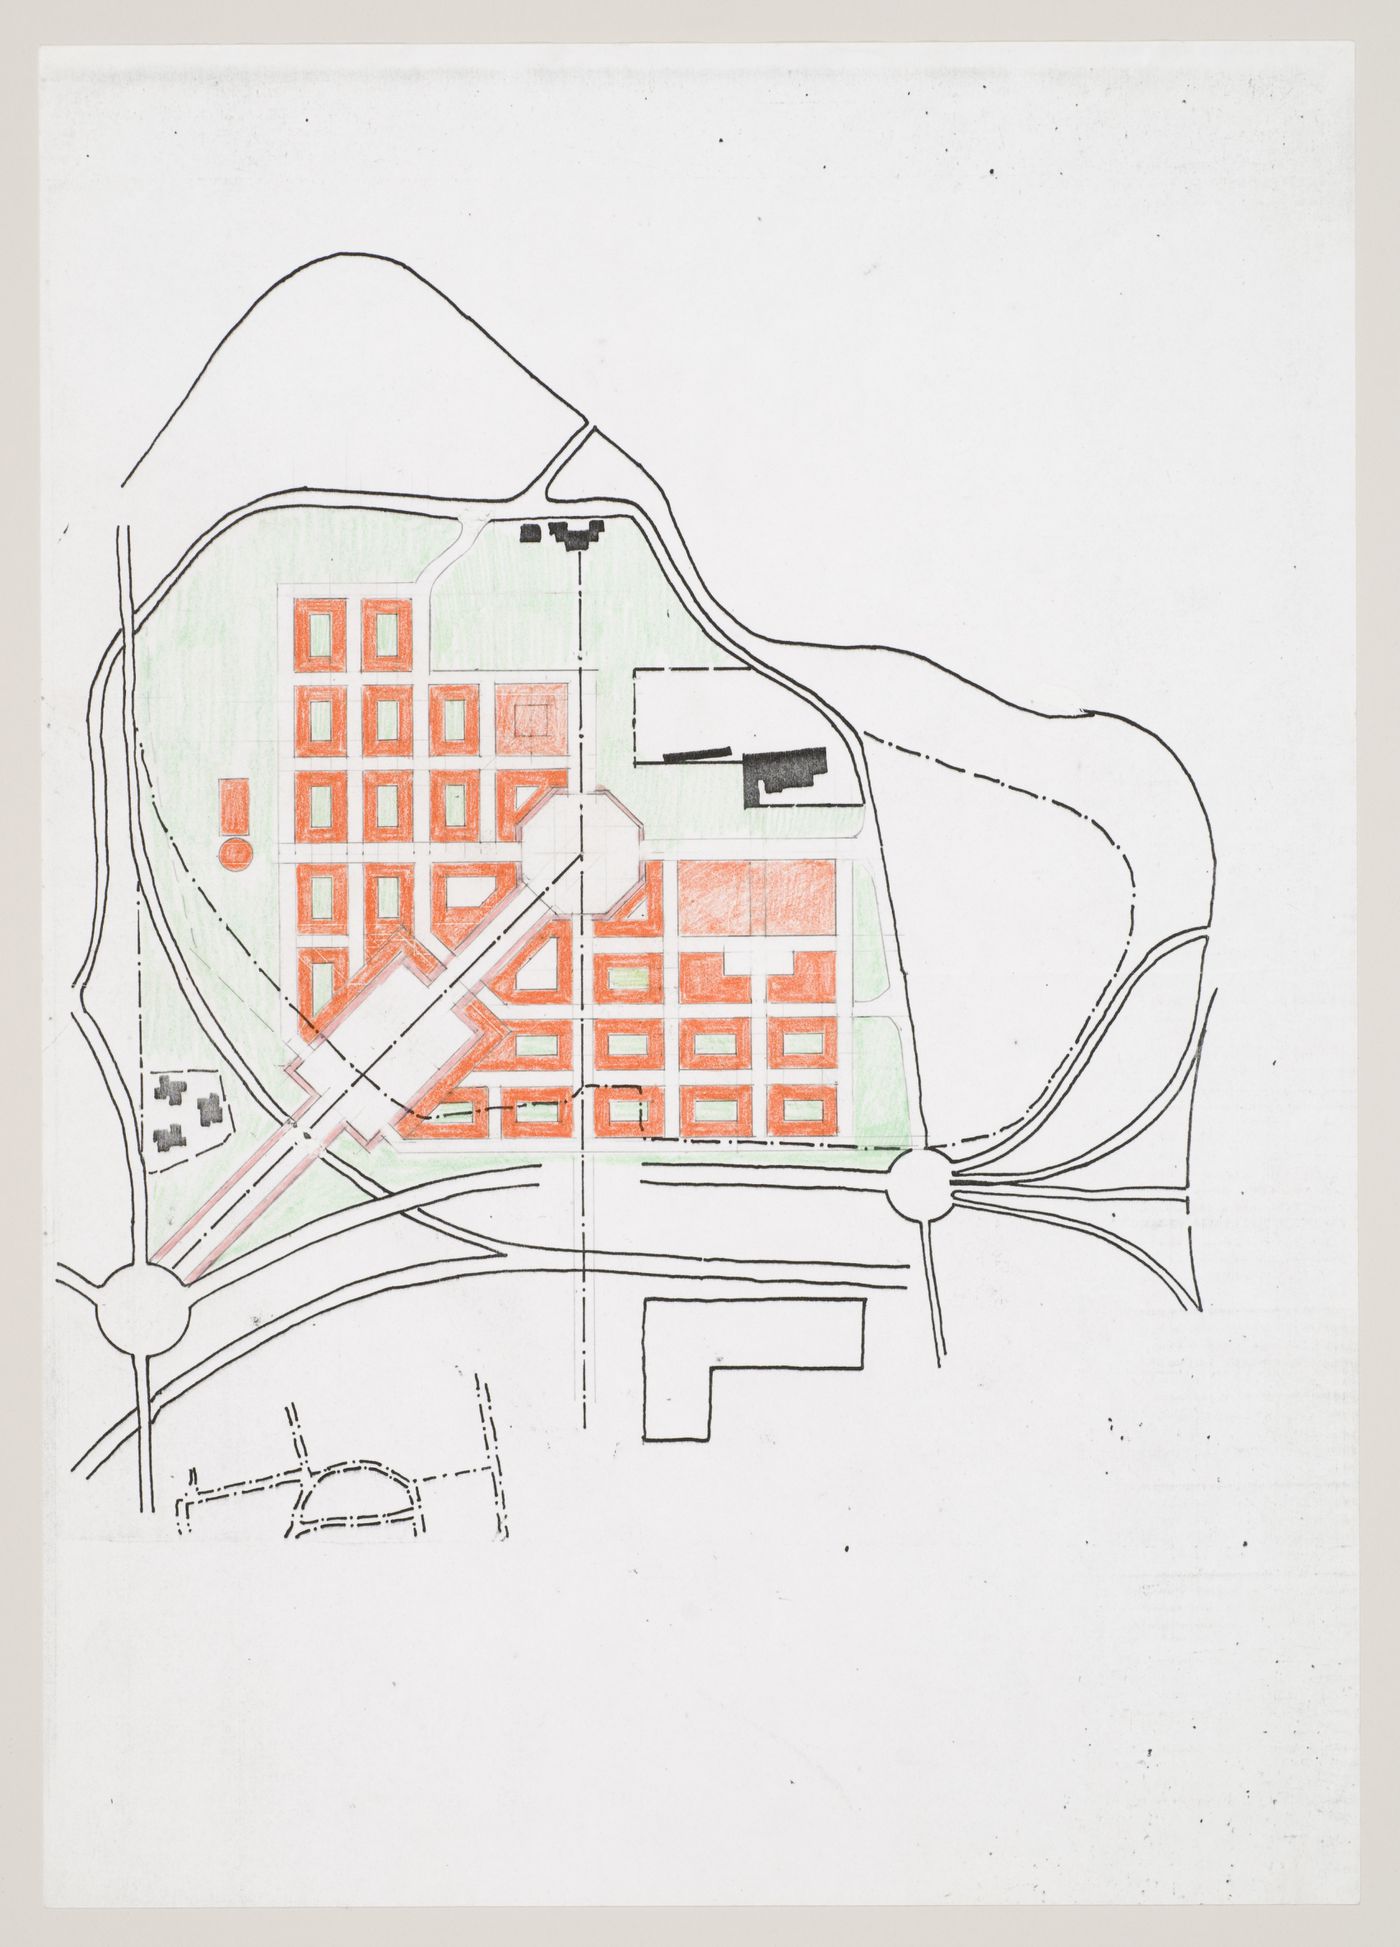 New Town Centre, Caselecchio di Reno, Italy: plan